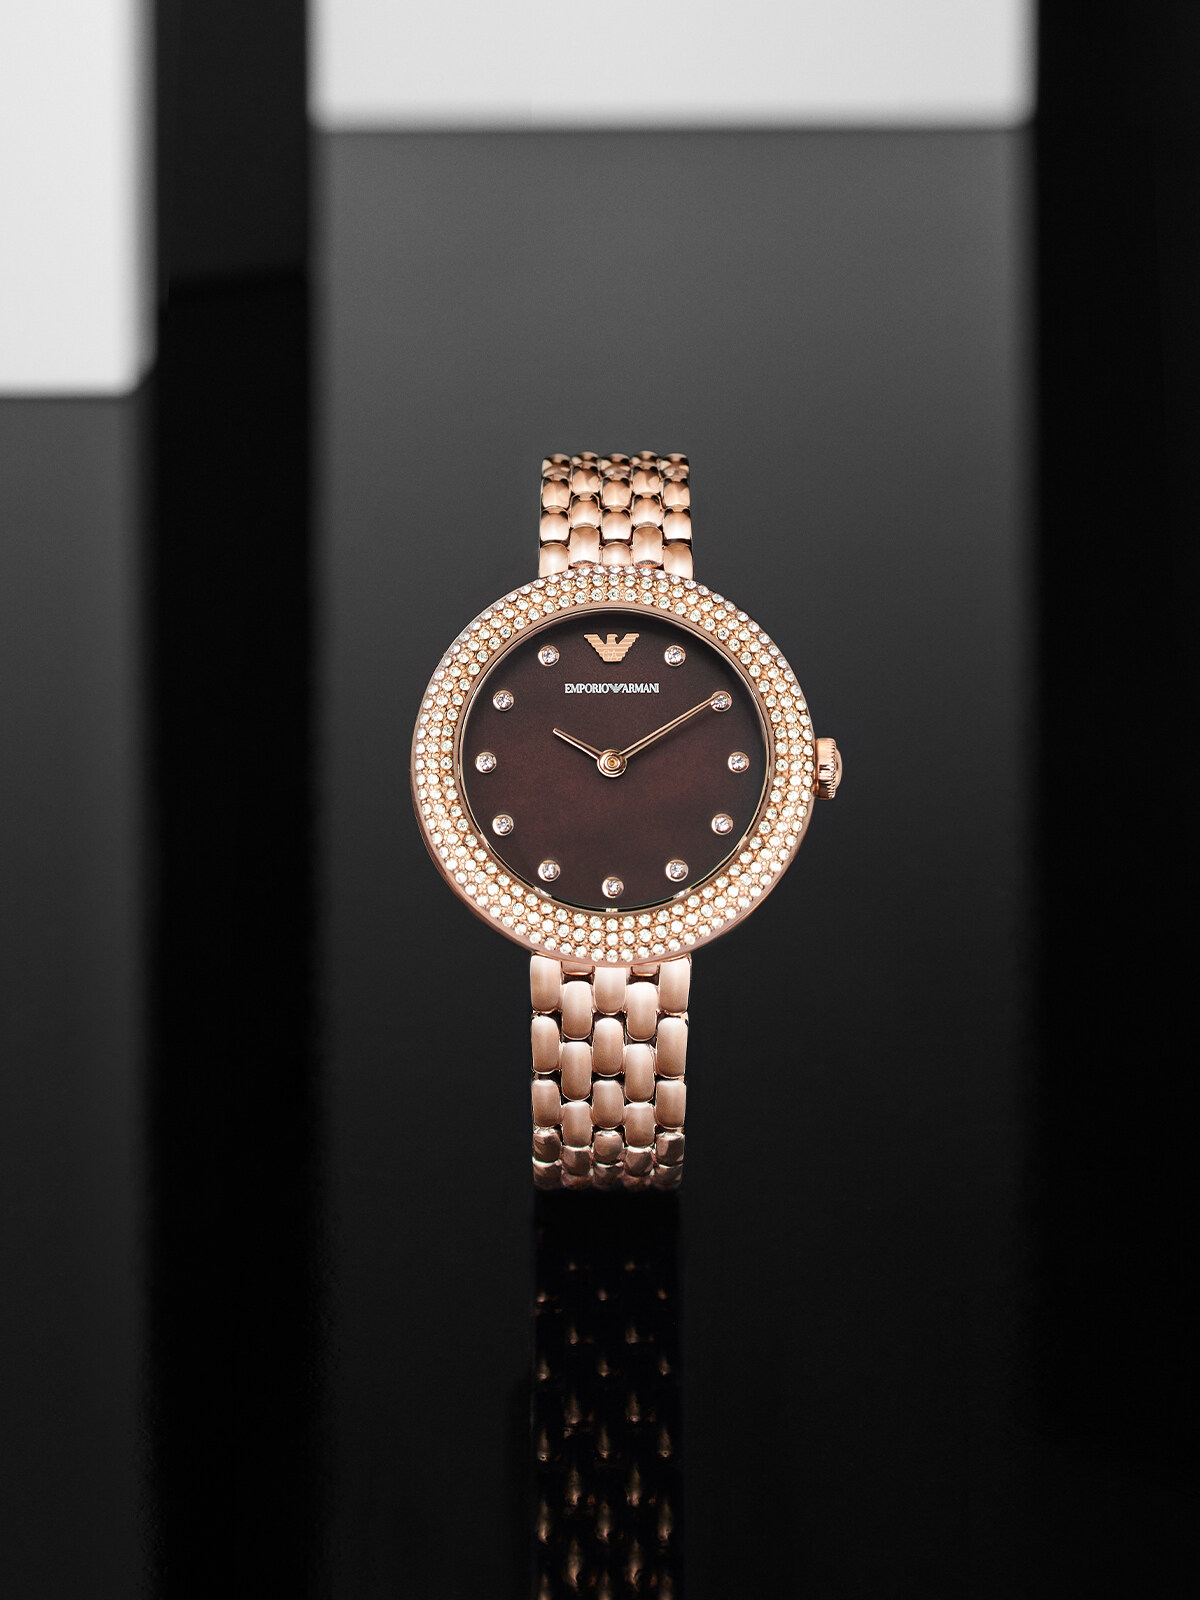 簡約利落的圓形錶殼，在錶圈上鋪鑲滿耀眼的營造出華麗美感；深啡色錶